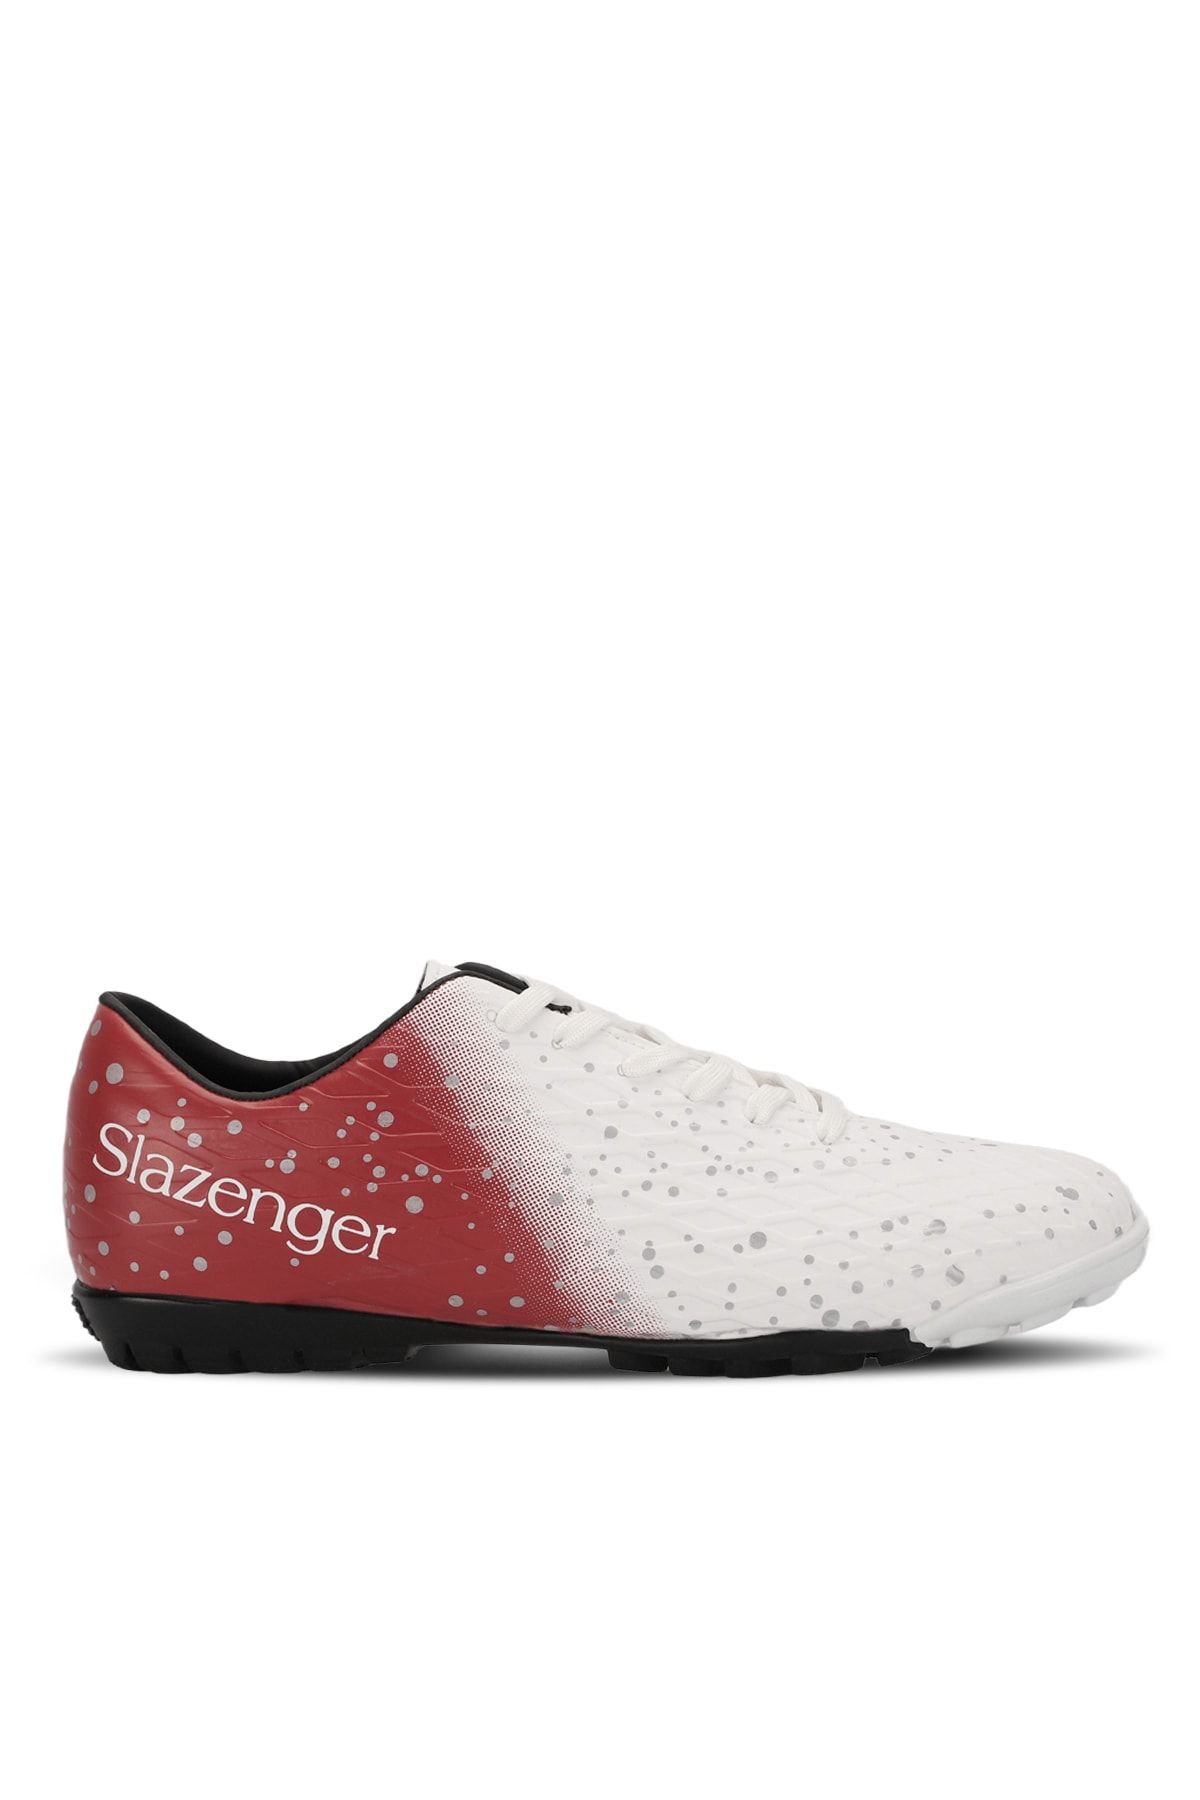 Slazenger Hanıa Hs Futbol Erkek Halı Saha Ayakkabı Beyaz / Kırmızı